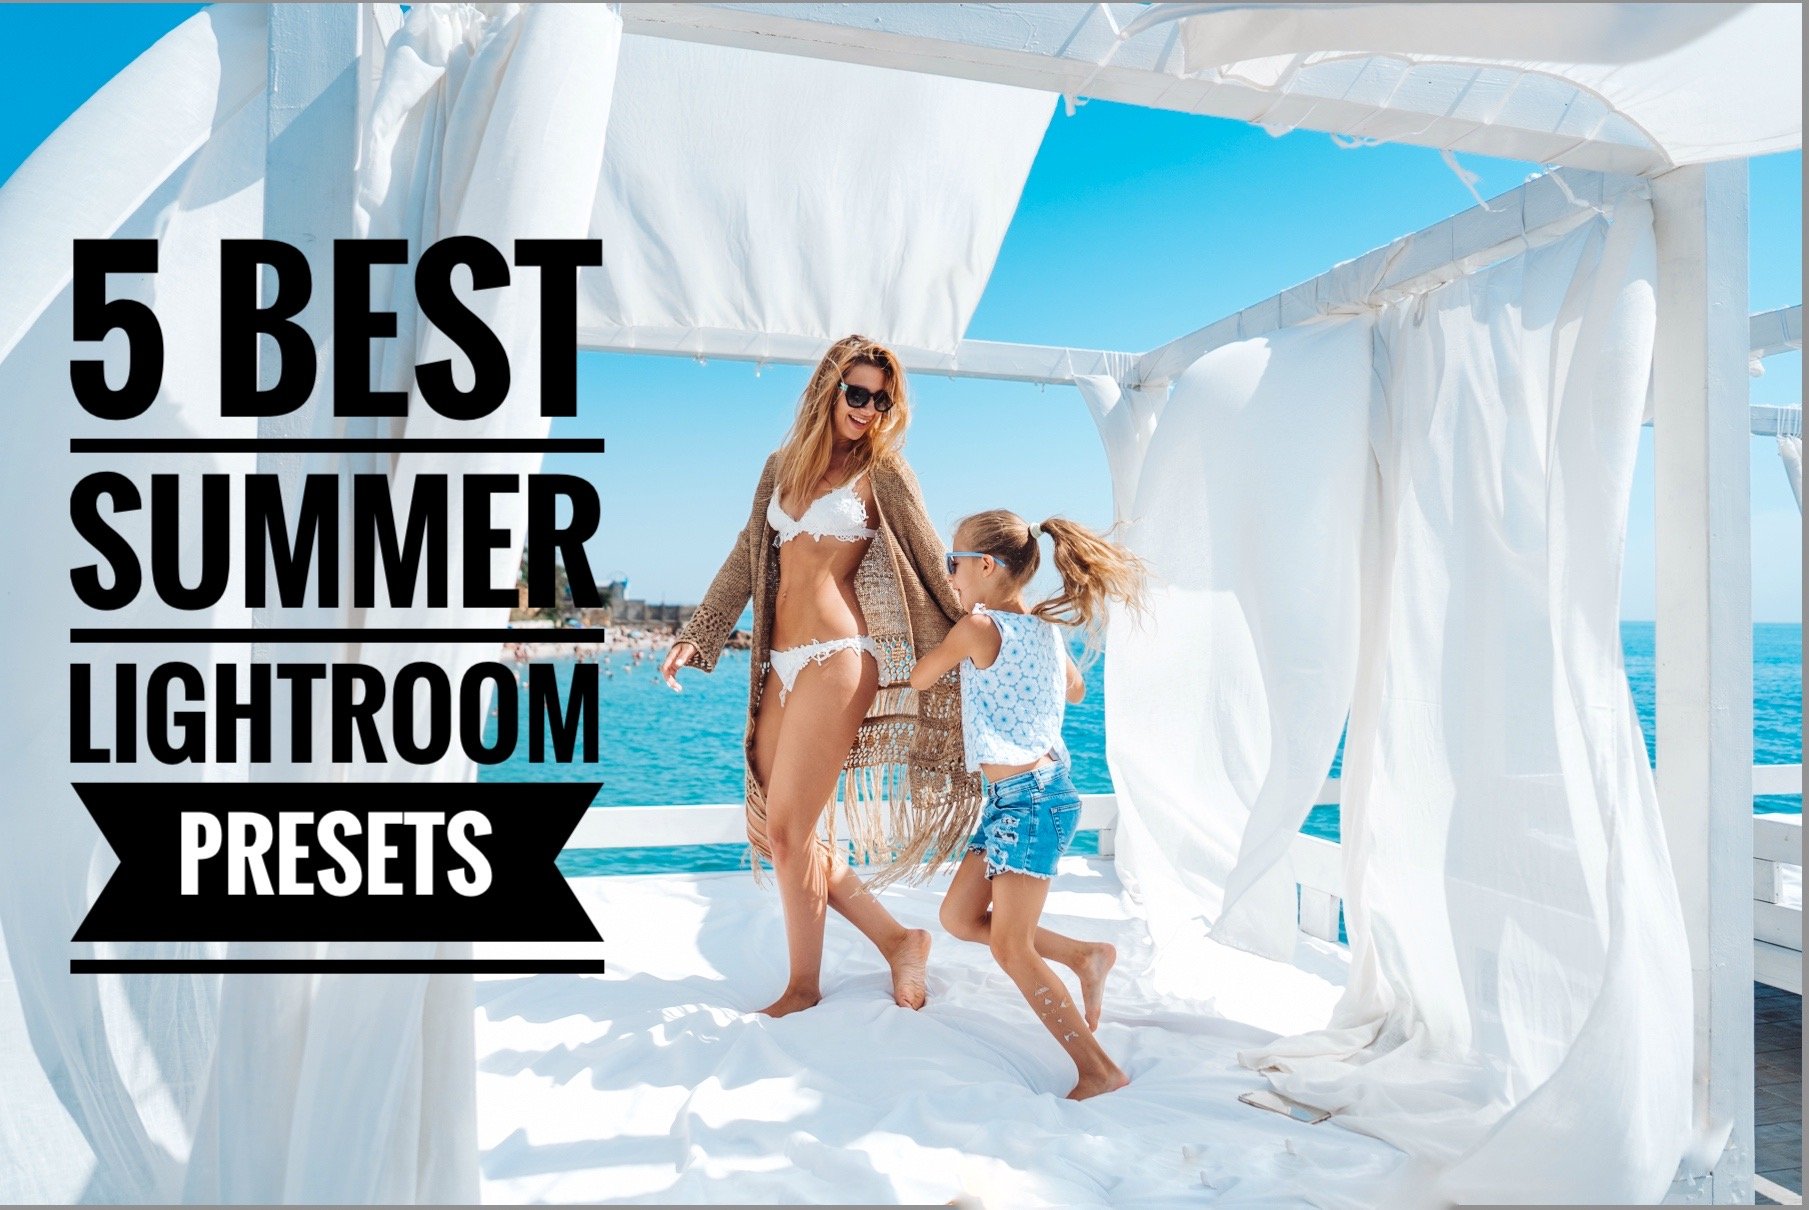 Best 5 Summer Lightroom Presetscover image.